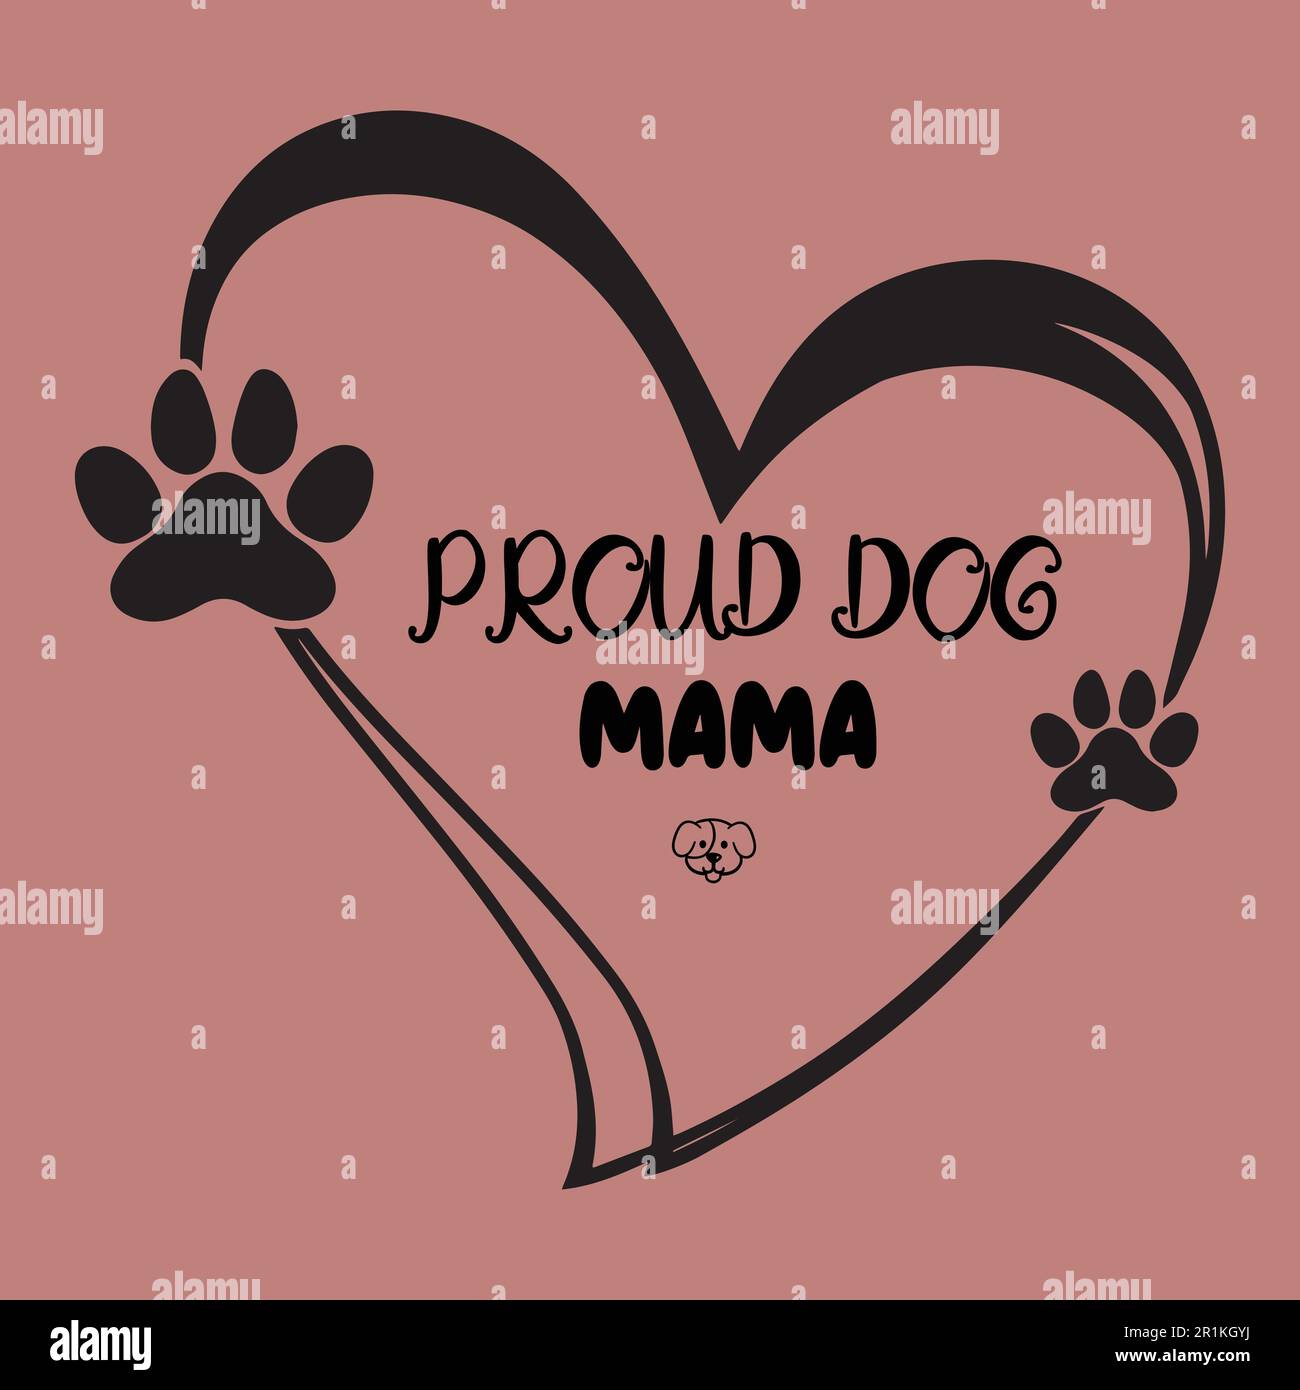 Proud Dog Mama- Dog T shirt Design Stock Vector